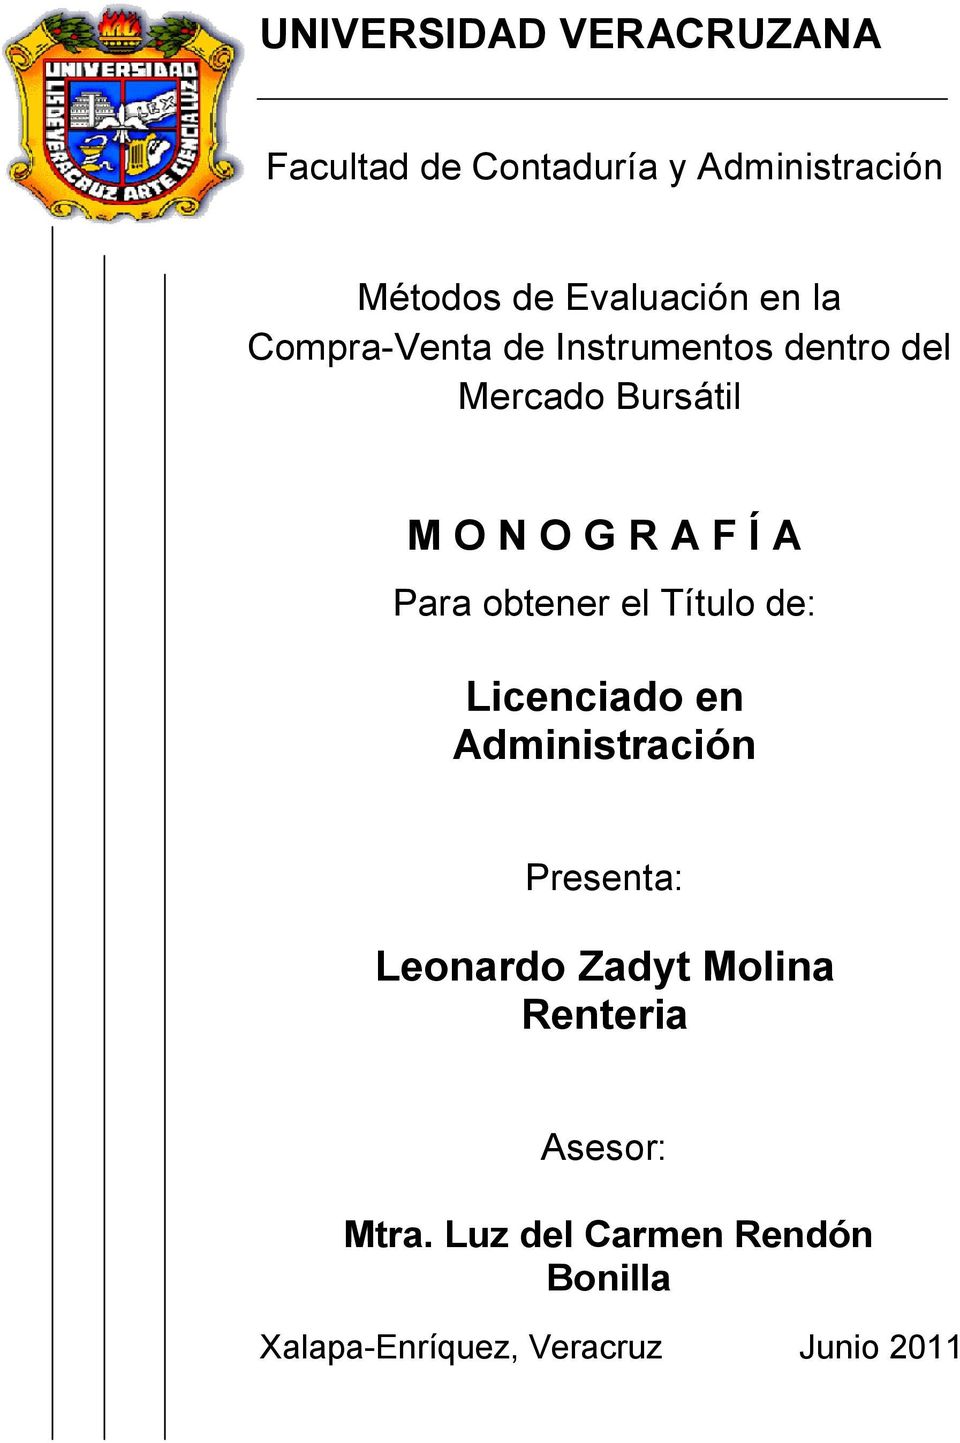 Para obtener el Título de: Licenciado en Administración Presenta: Leonardo Zadyt